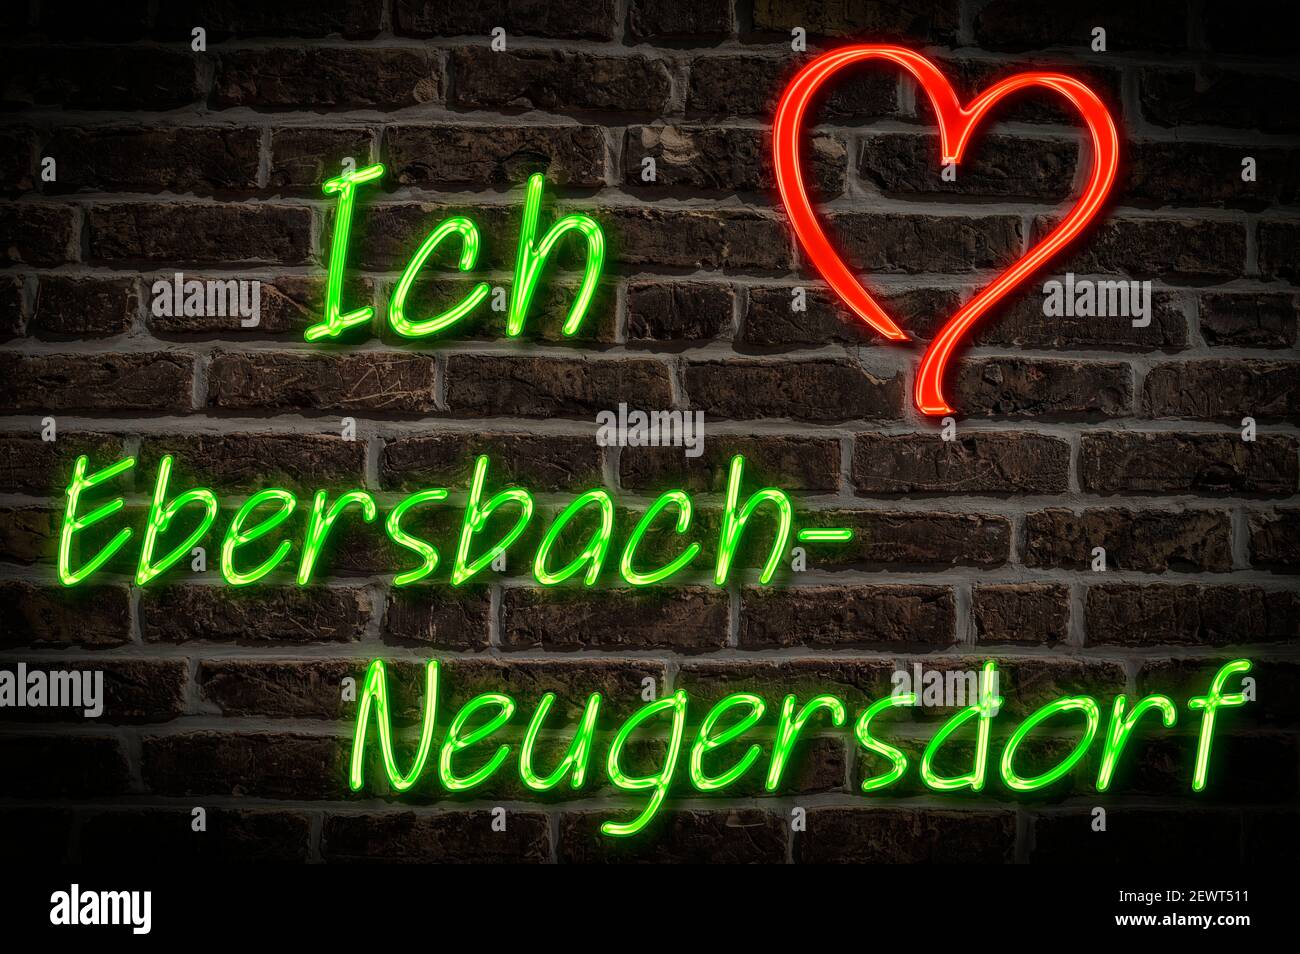 Leuchtreklame, Ich liebe Ebersbach-Neugersdorf, Sachsen, Deutschland, Europa | Illuminated advertising, I love Ebersbach-Neugersdorf, Saxony, Germany, Stock Photo